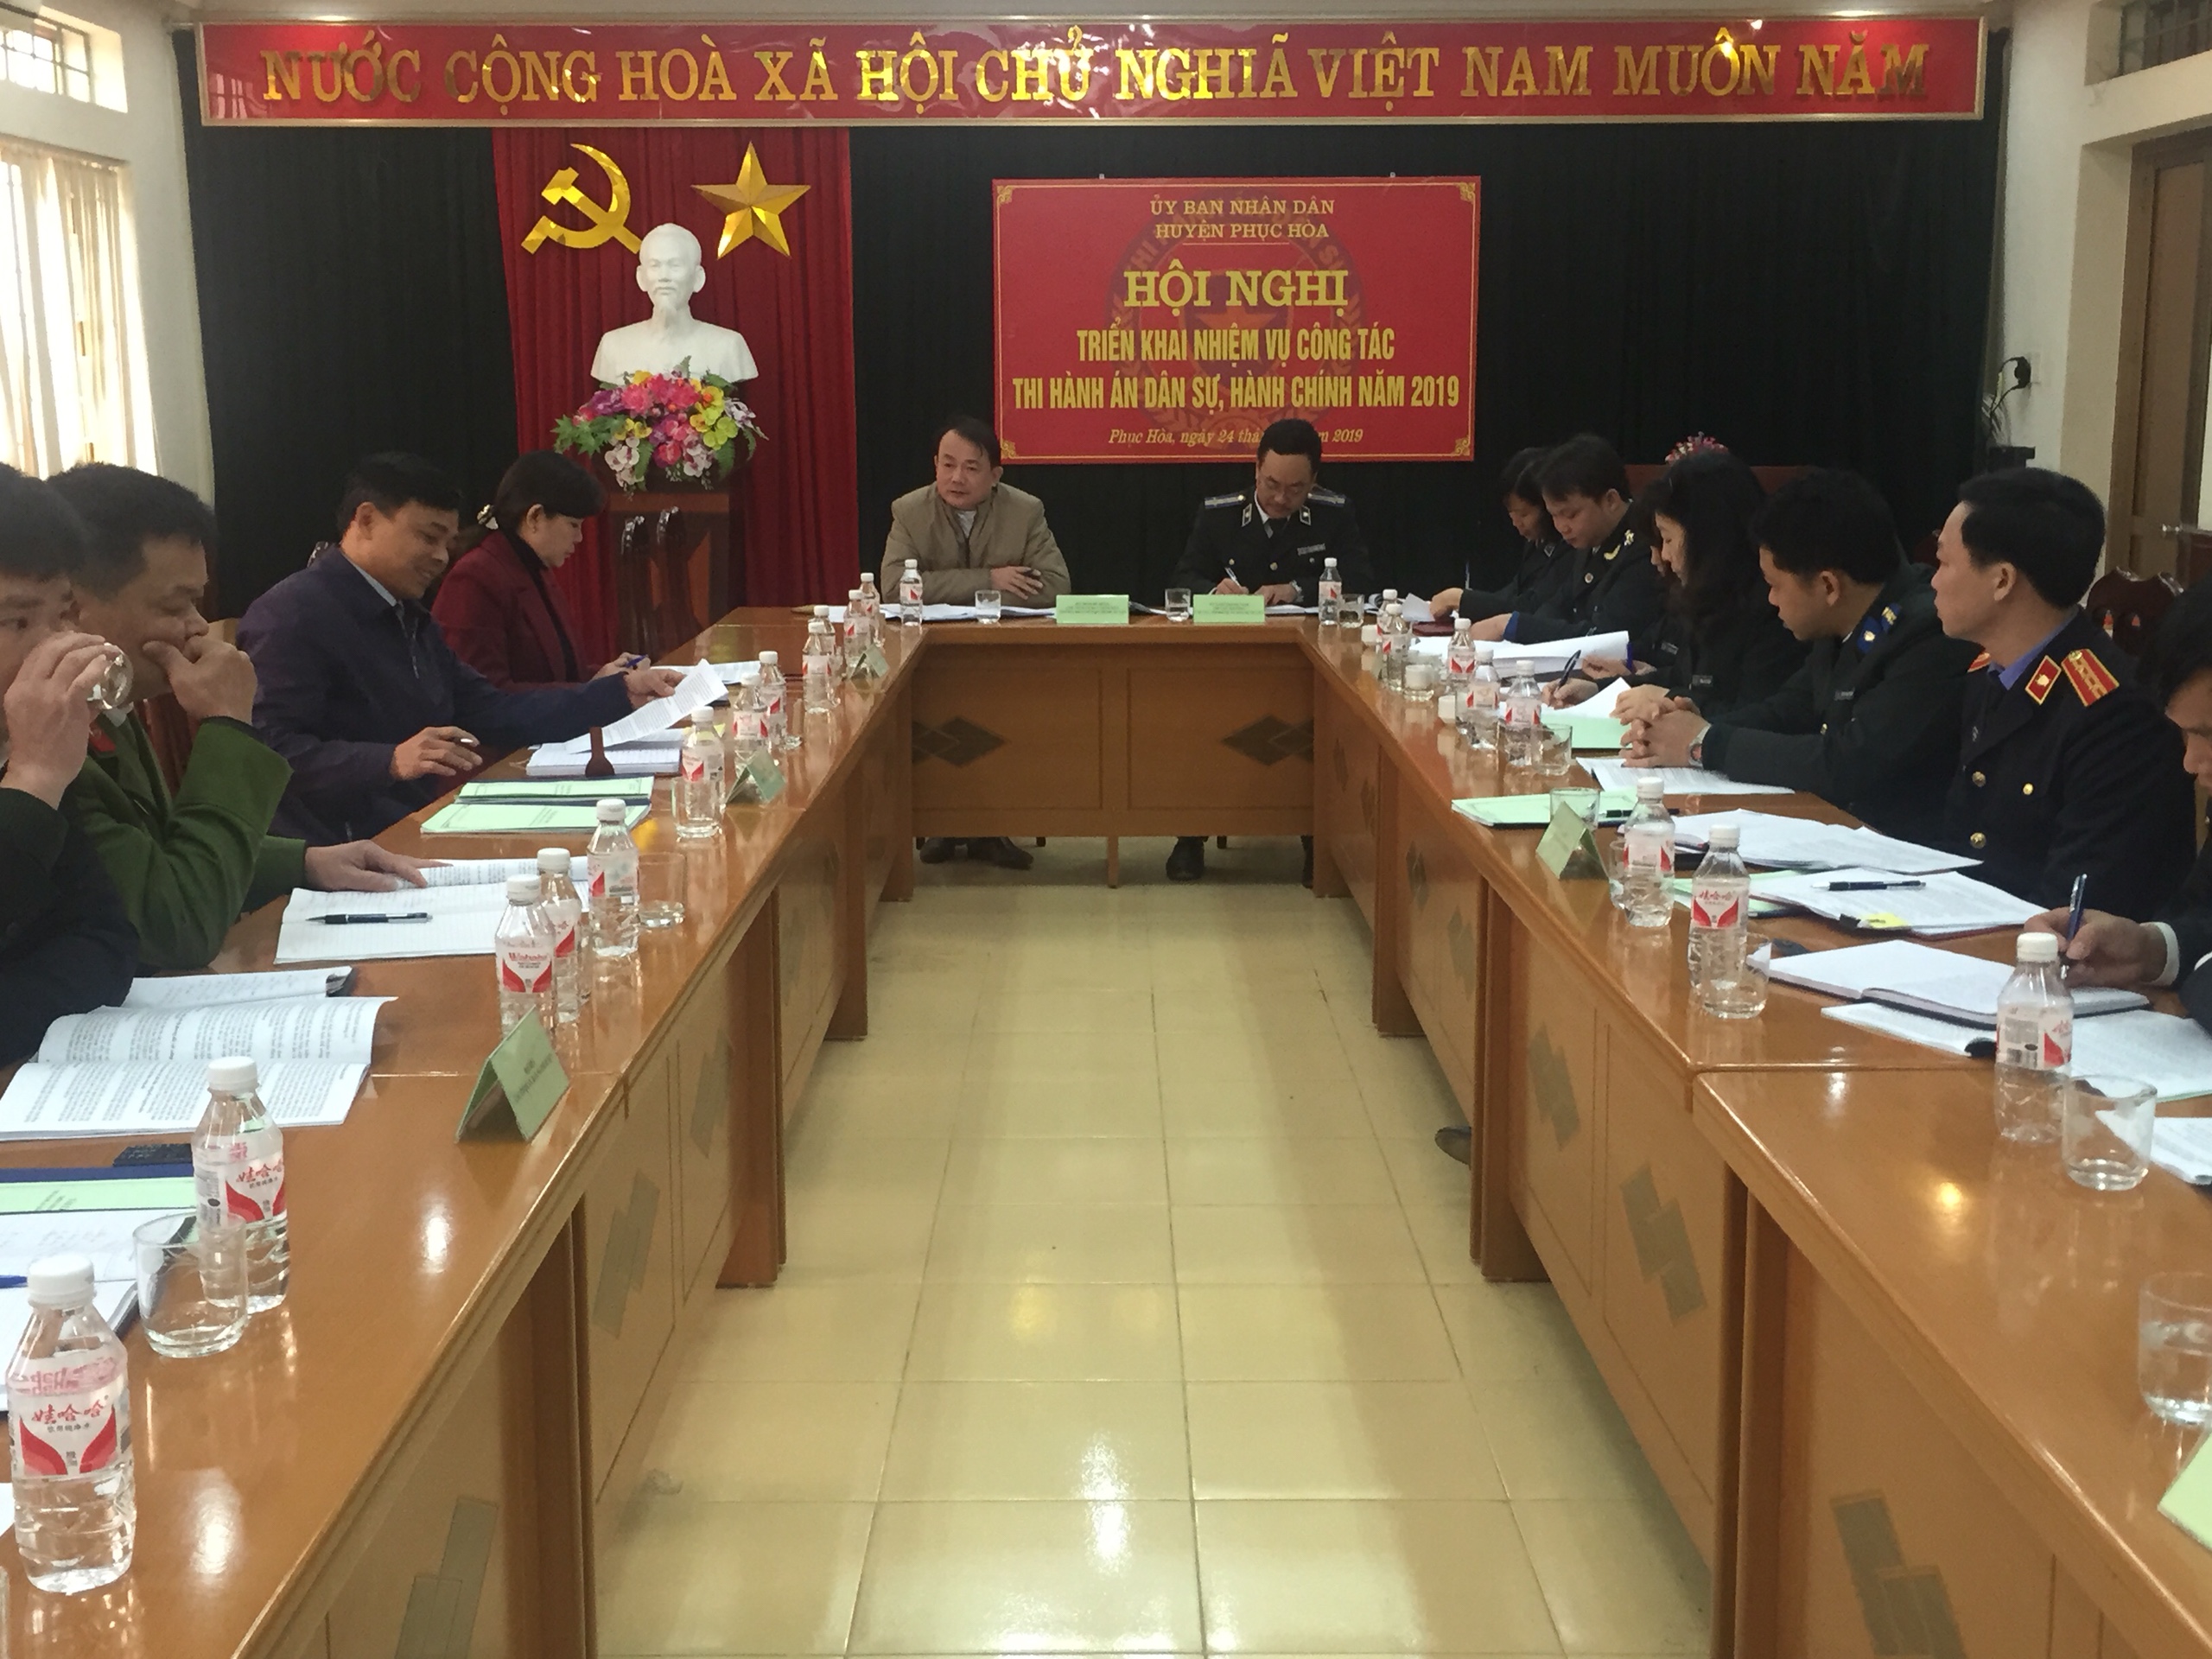 Ủy ban nhân dân huyện Phục Hòa tổ chức Hội nghị triển khai công tác thi hành án dân sự, hành chính năm 2019